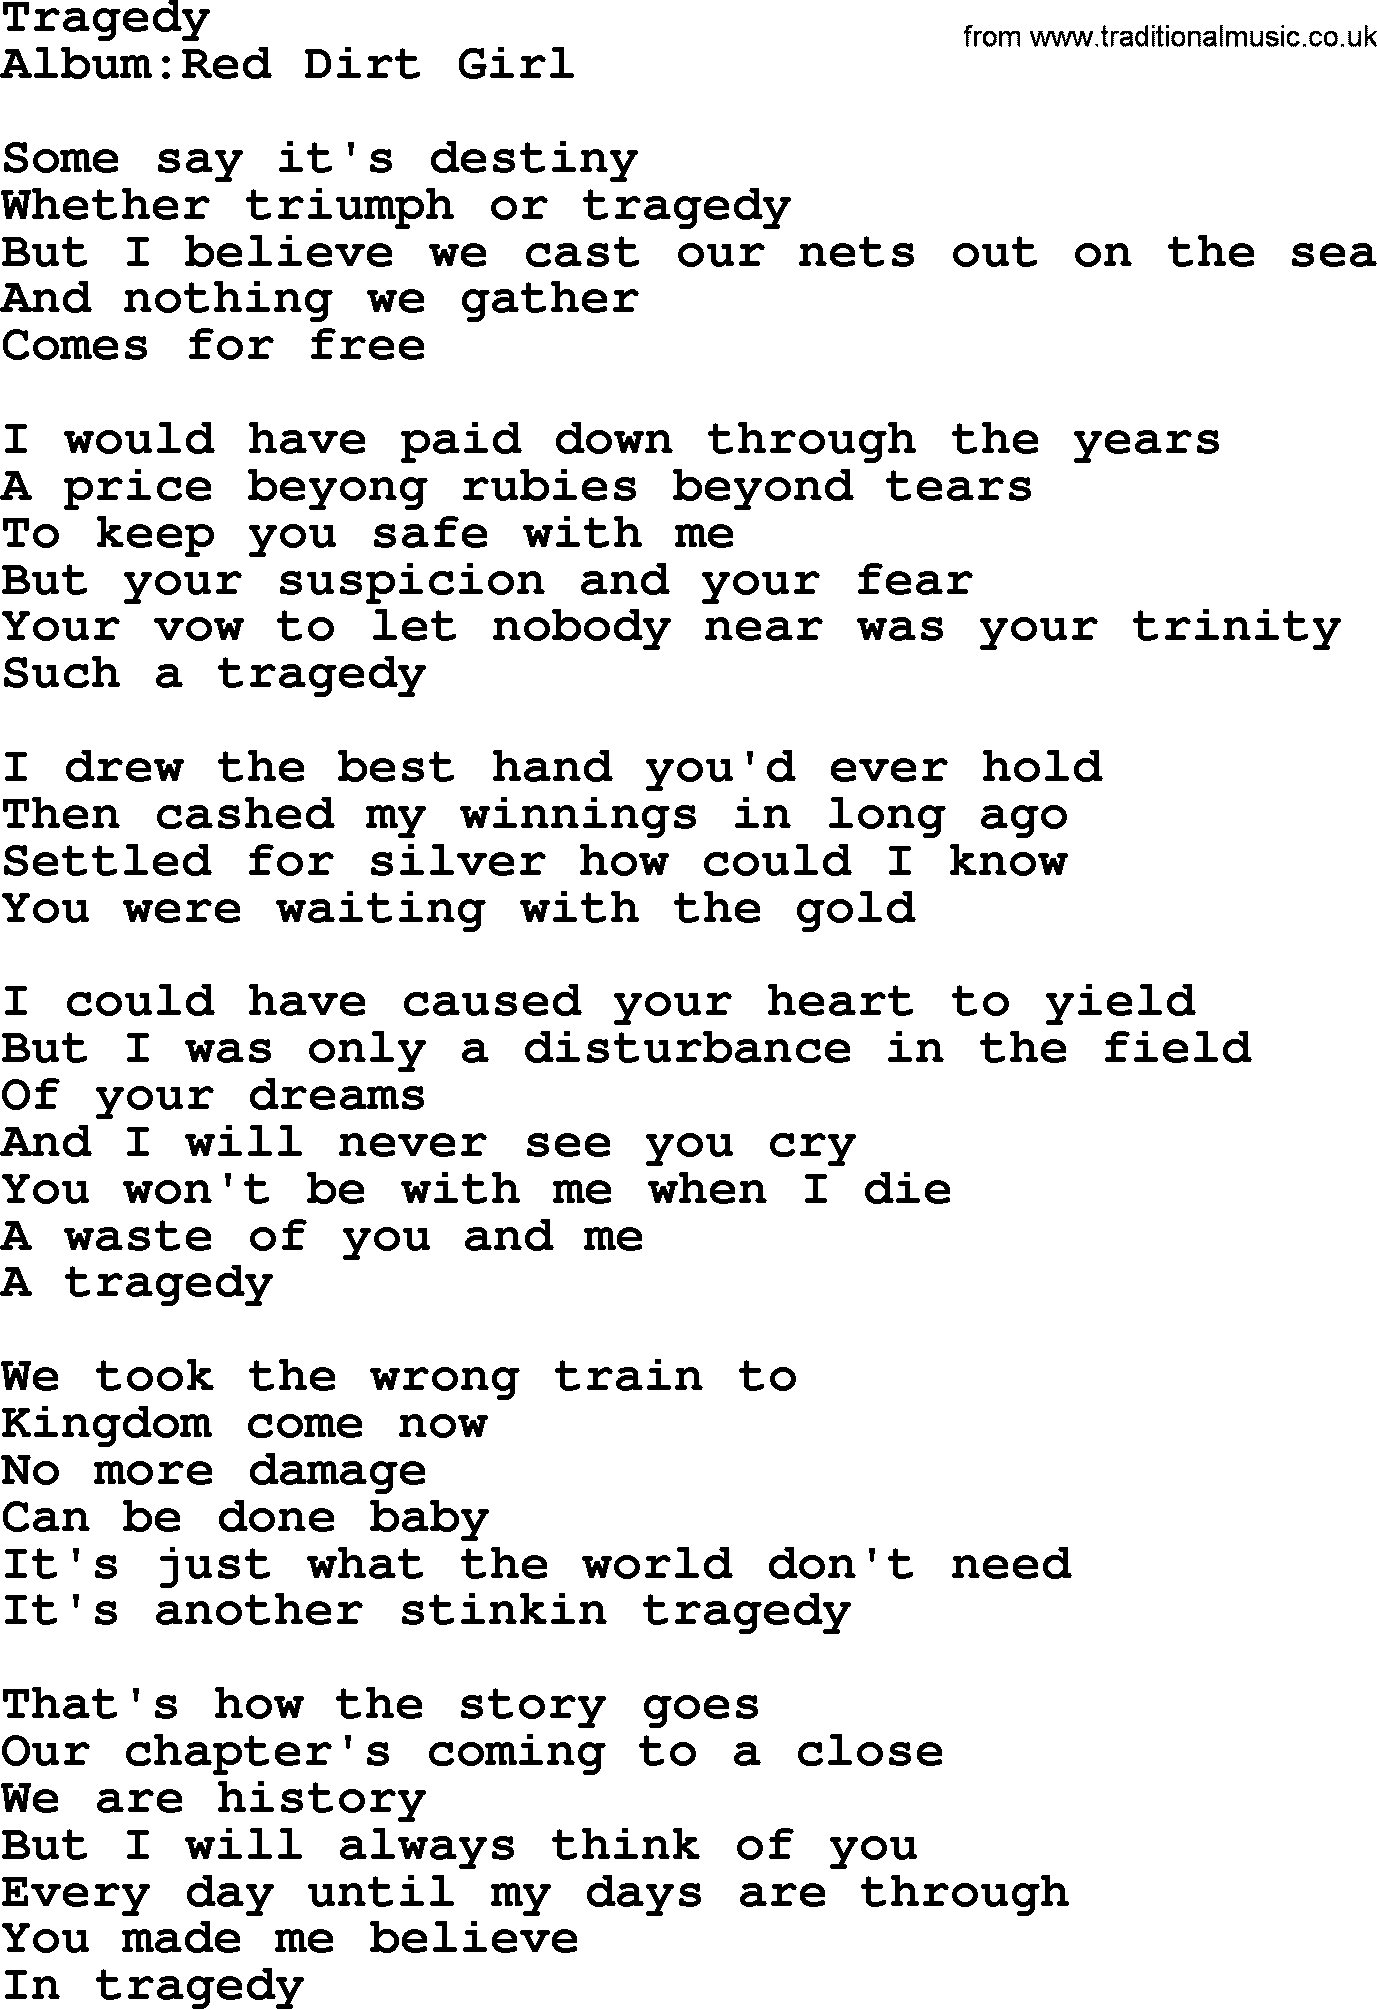 Emmylou Harris song: Tragedy lyrics